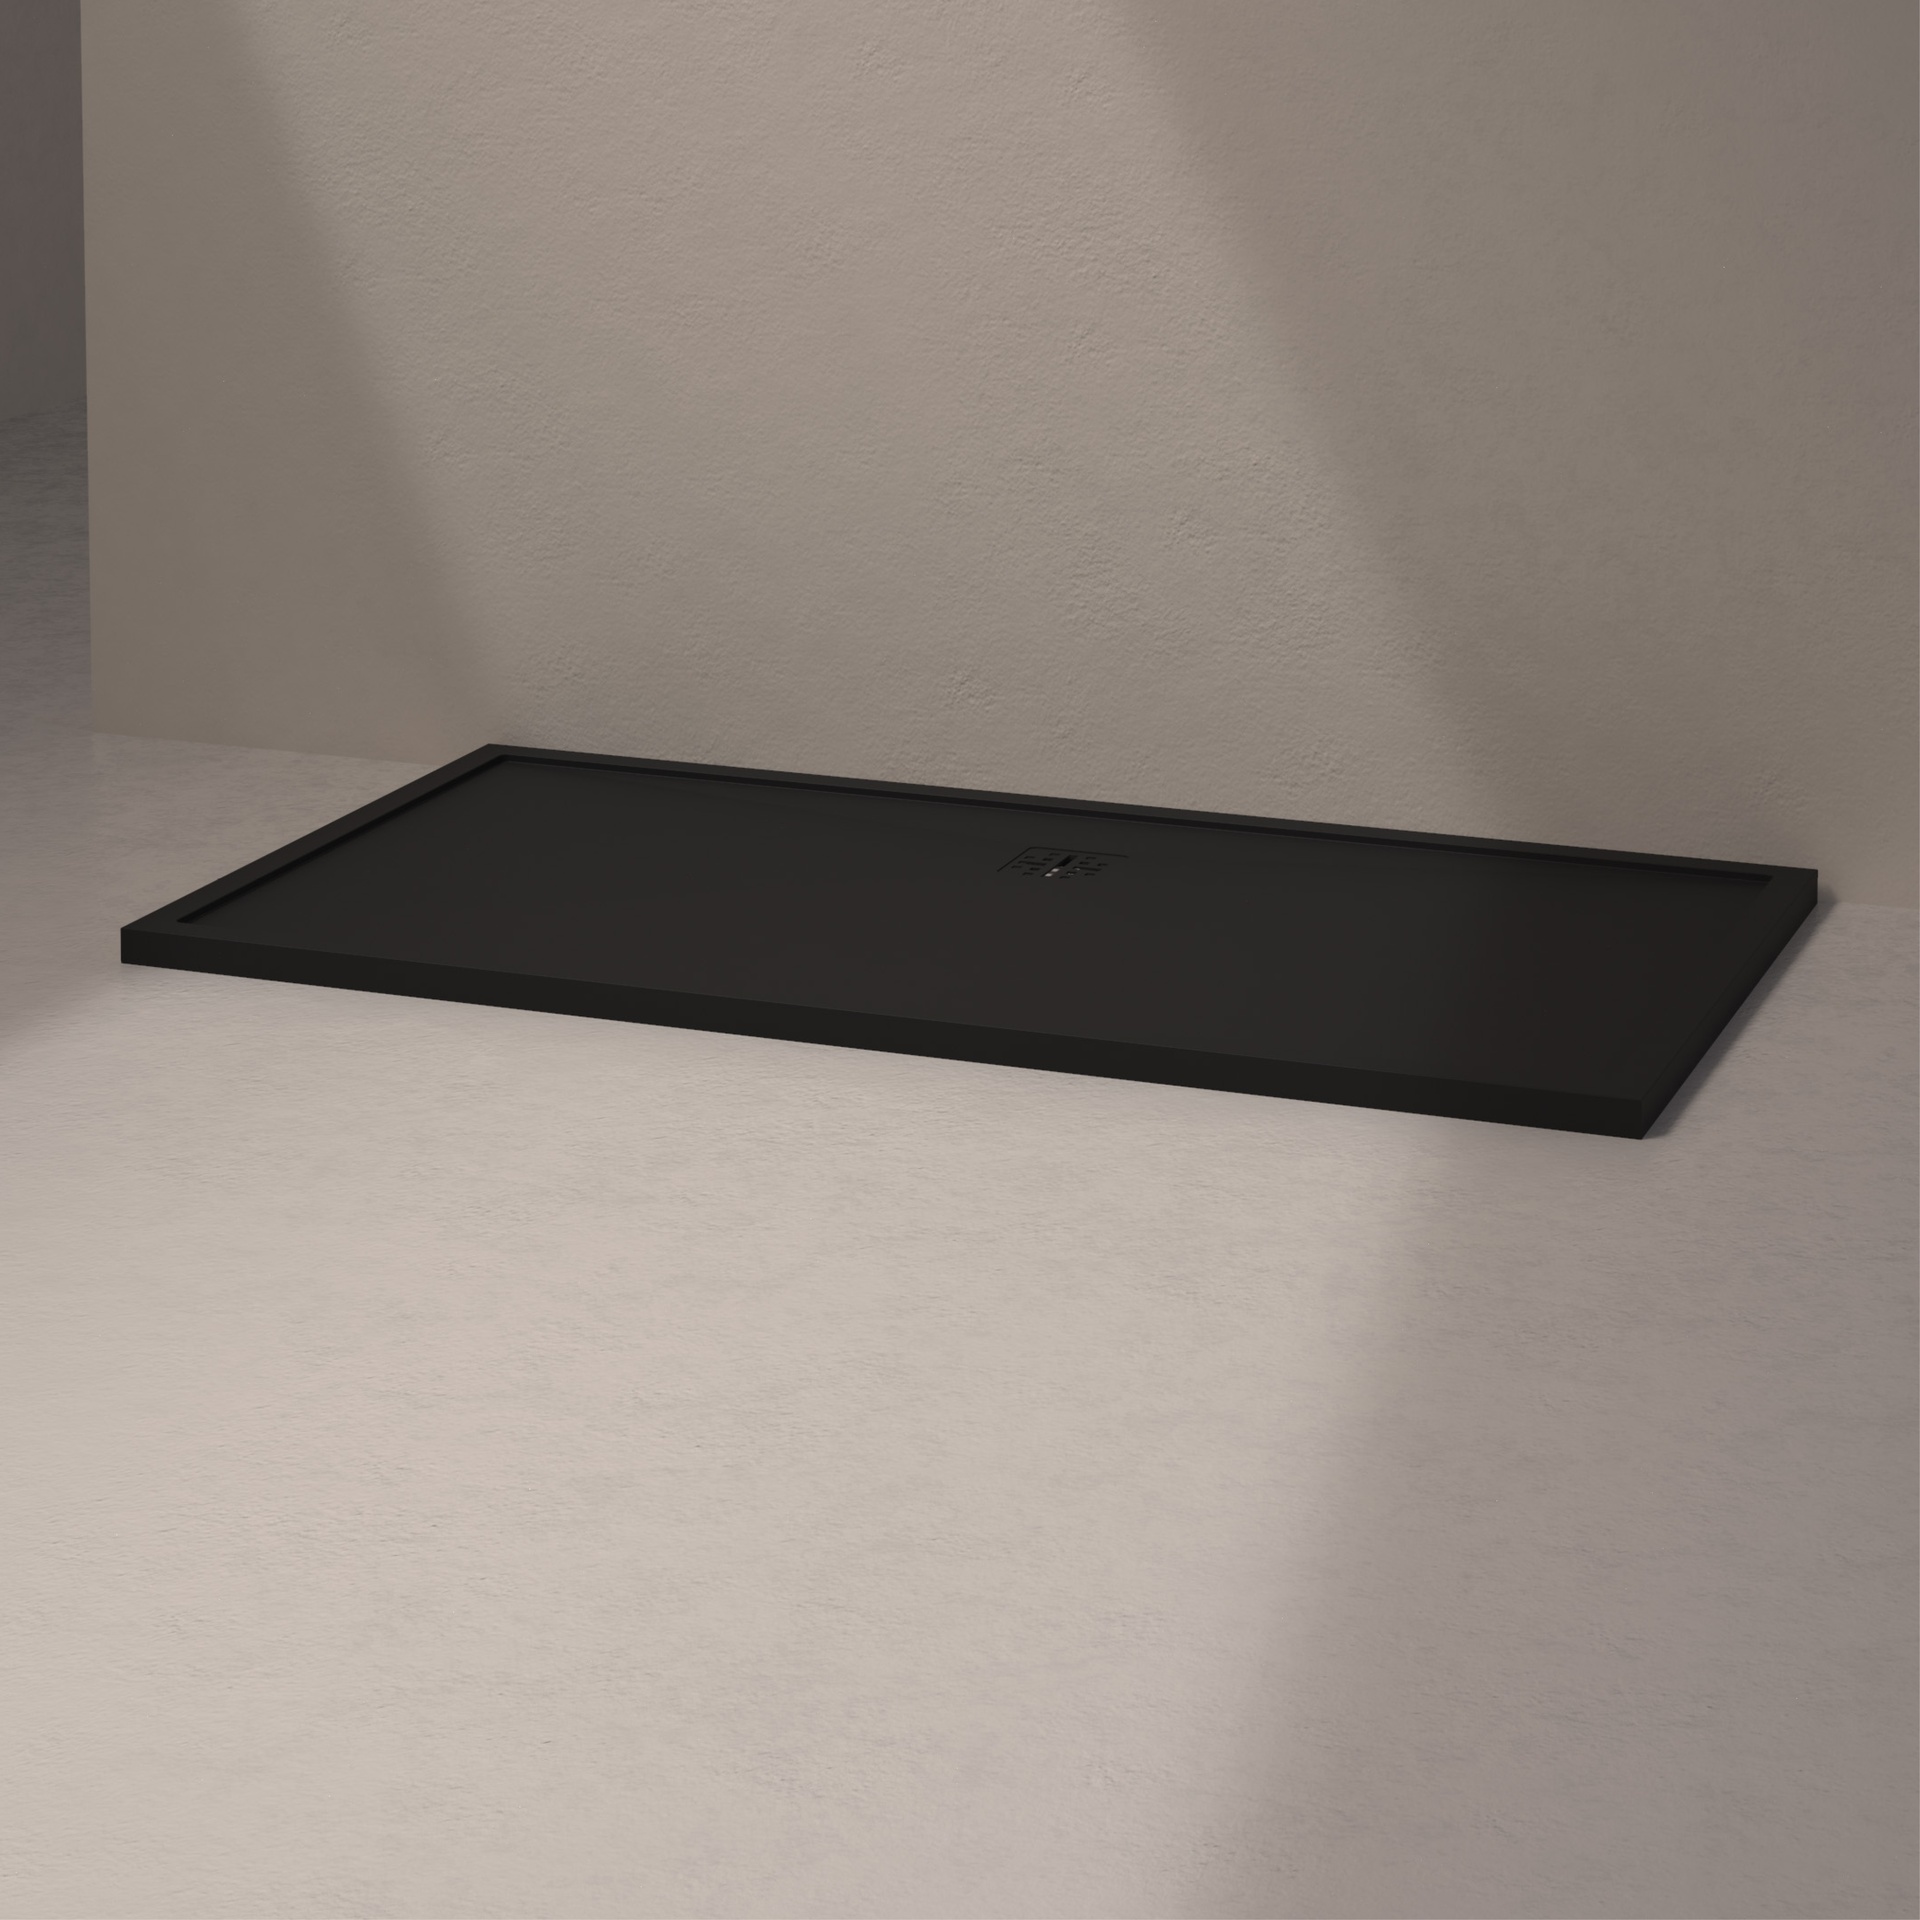 [MSTEL90170-BLACK] Mist douche vloer, lange zijde afvoer (170x90, natuursteen zwart)